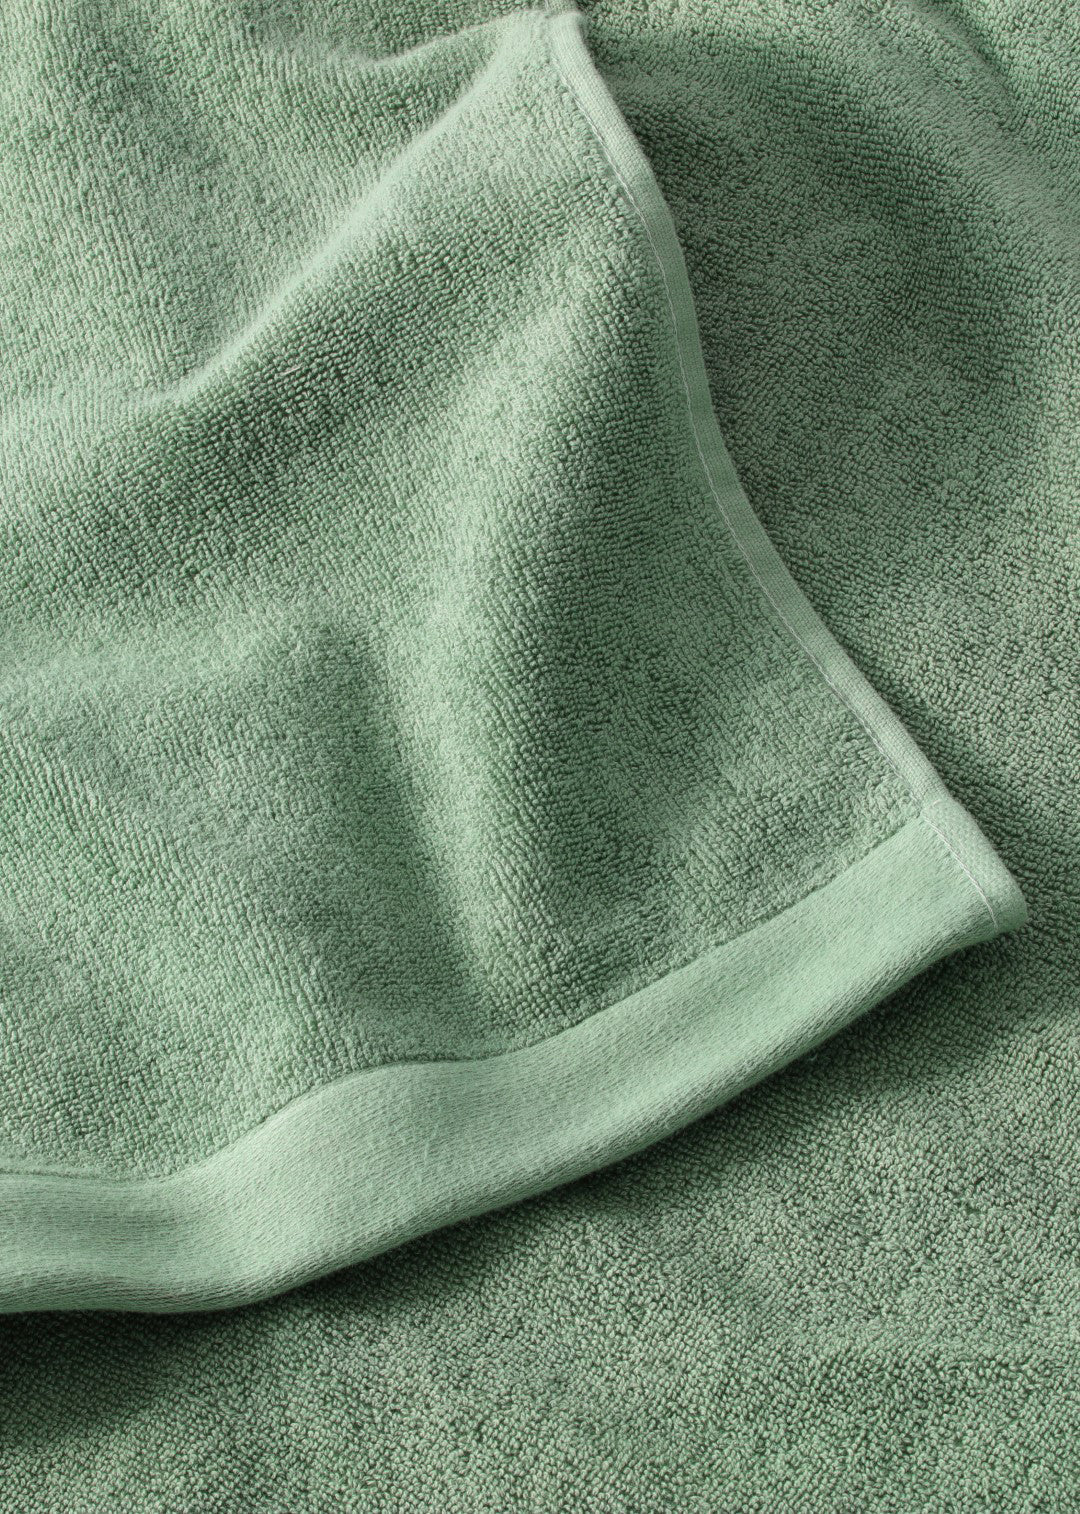 Towel pack 8 pcs - Dark green